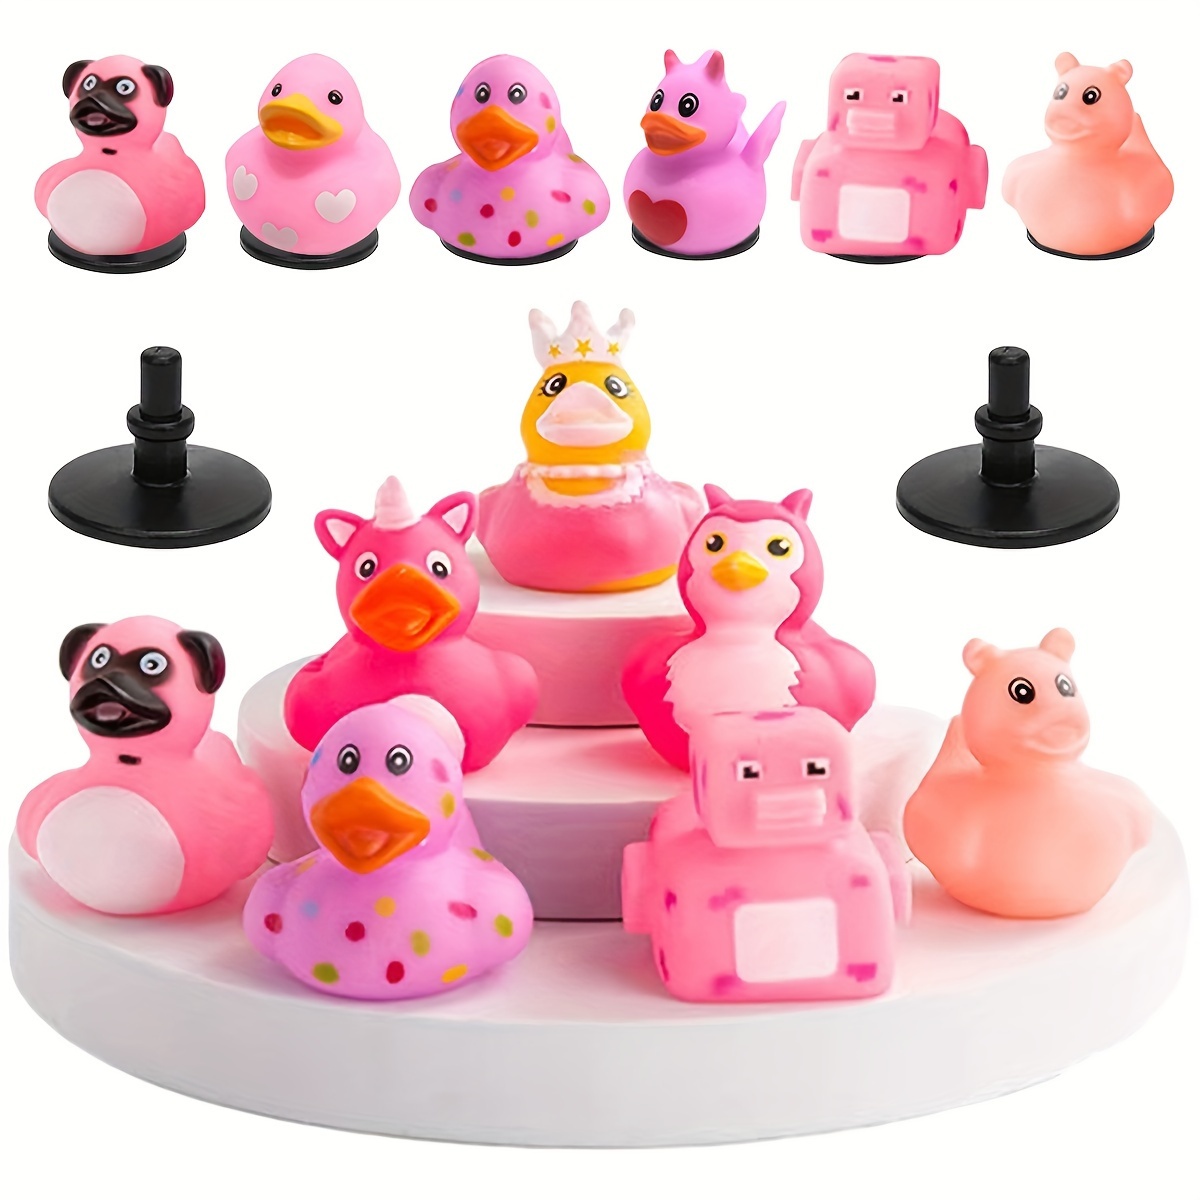 Rubber Duck pink - Rubber Ducky - Rubber Duckie - Bathduck